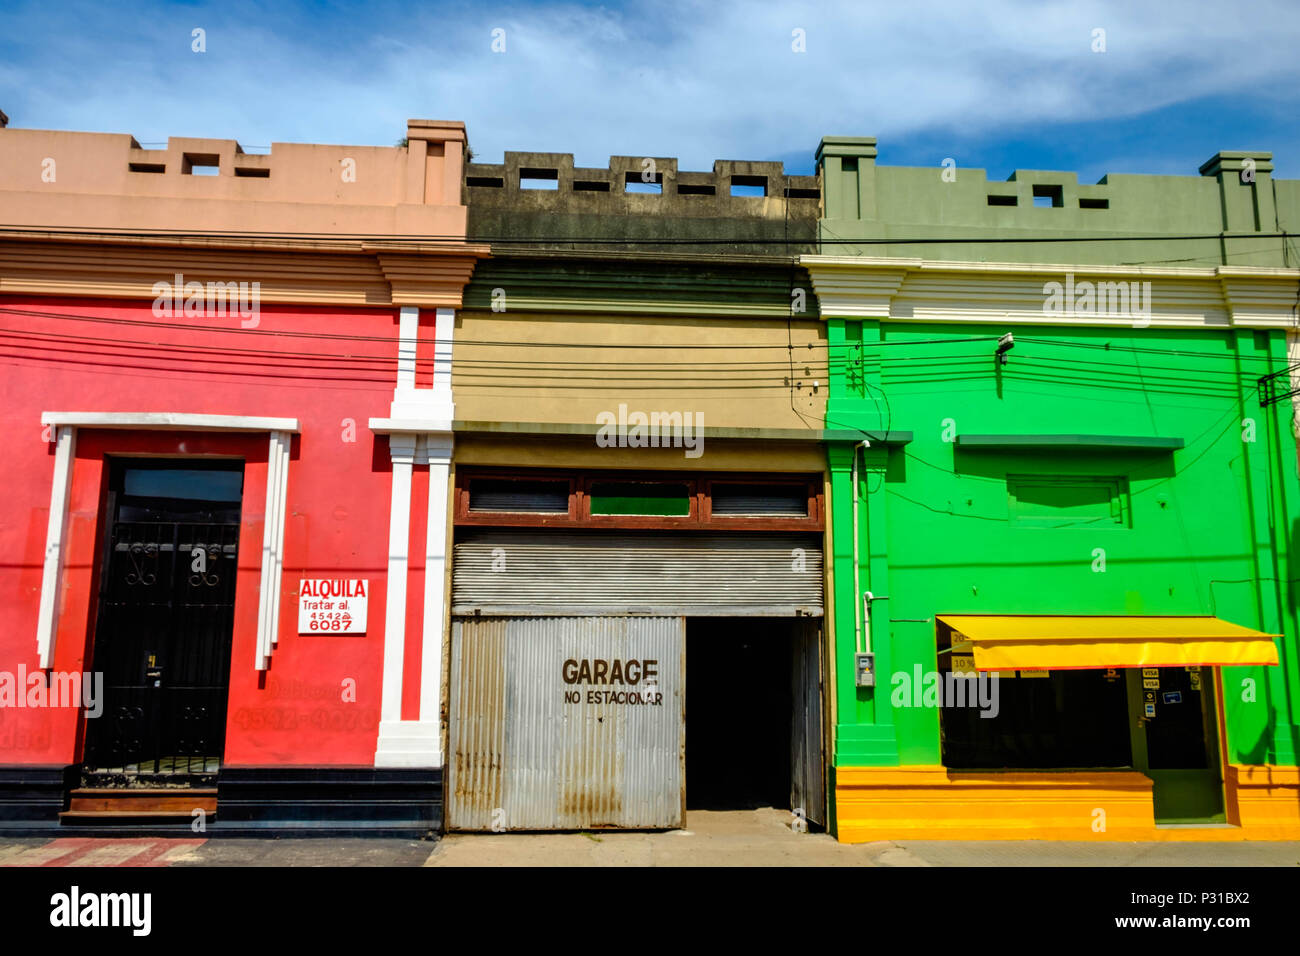 Bunte Häuser stehen im Zentrum der Stadt von Carmelo, Uruguay. In der Mitte, in einem grauen Garage unterbricht die starken Farben. Stockfoto